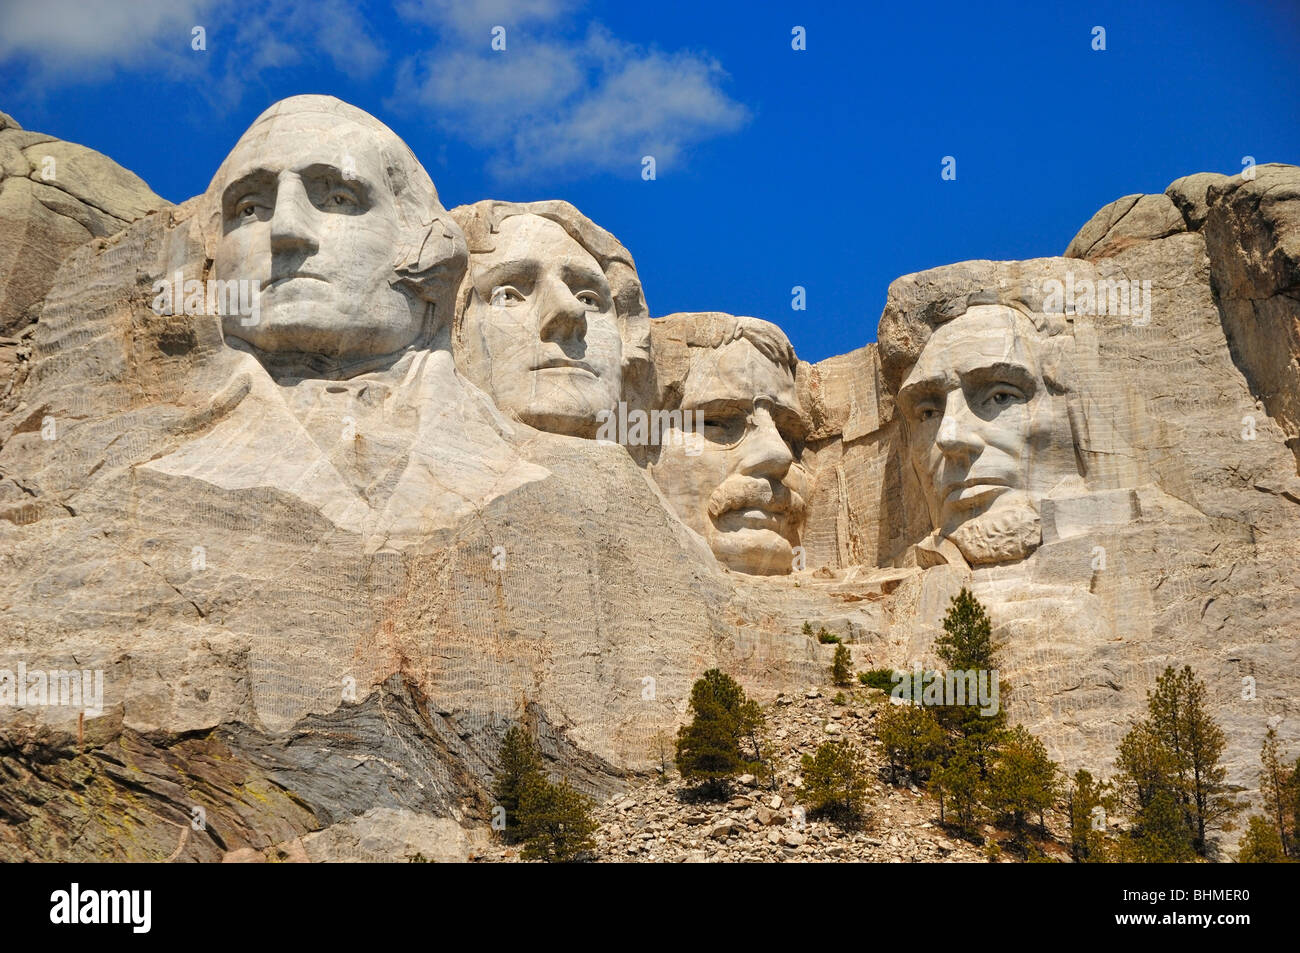 Les quatre présidents américains sculpté dans la roche au Monument National du Mont Rushmore, dans le Dakota du Sud, USA Banque D'Images